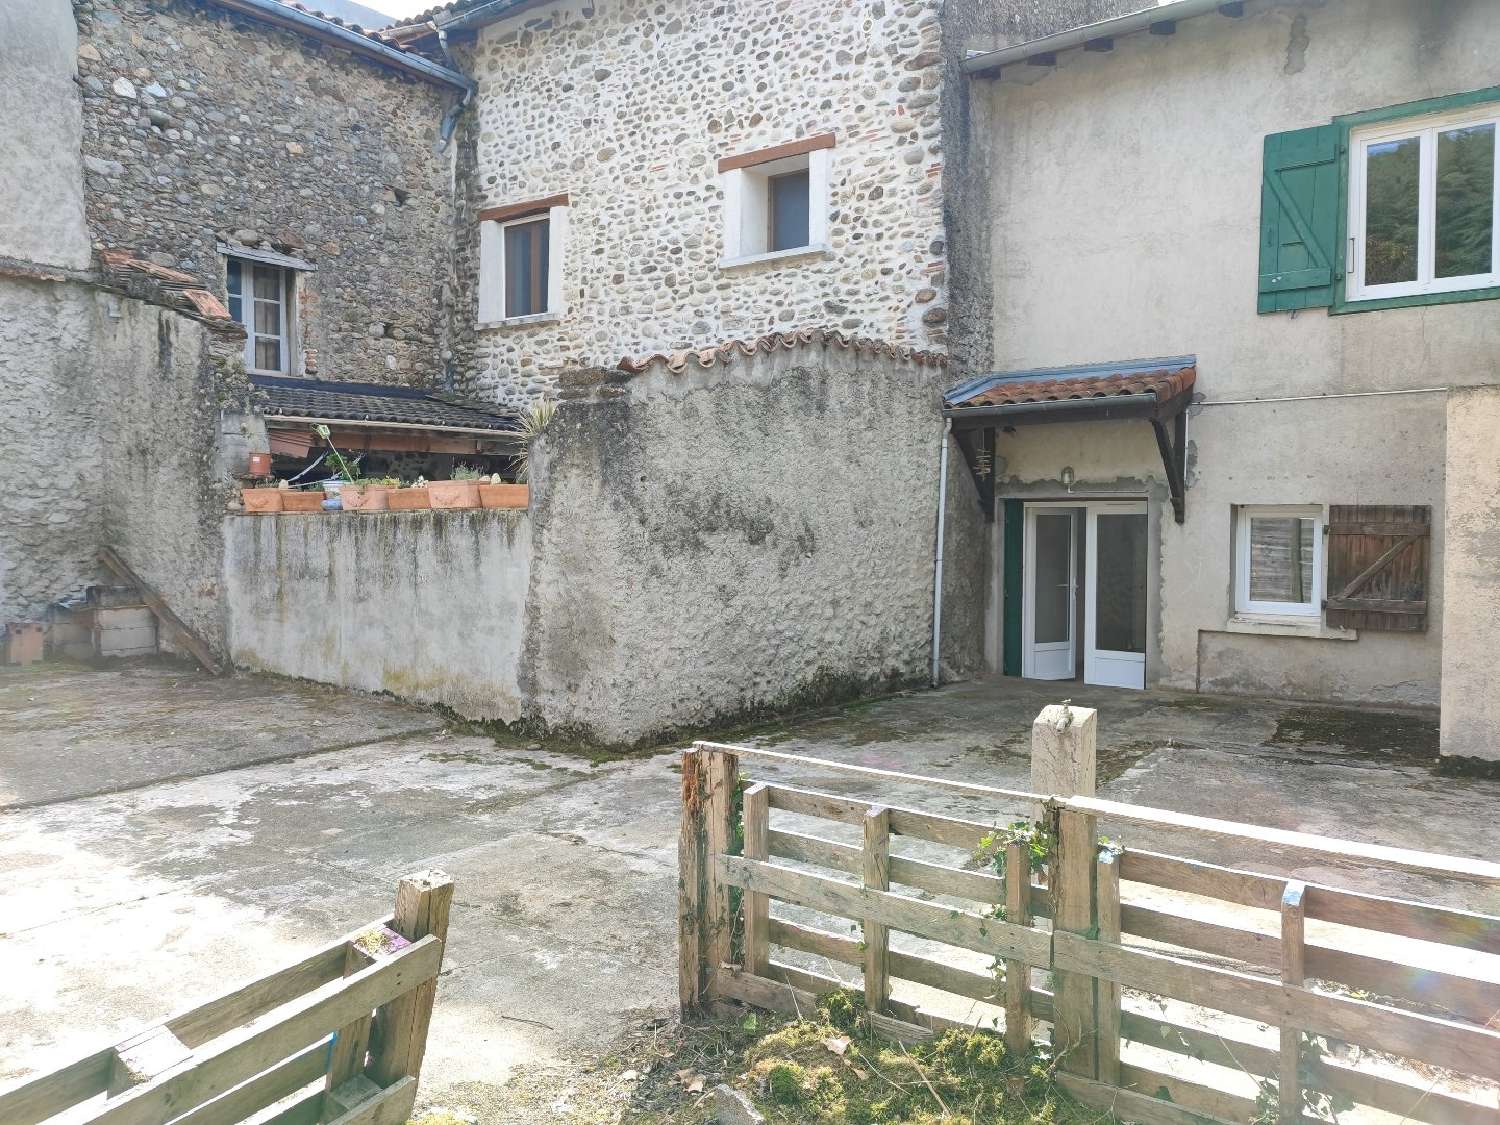  à vendre maison de village Dalou Ariège 3